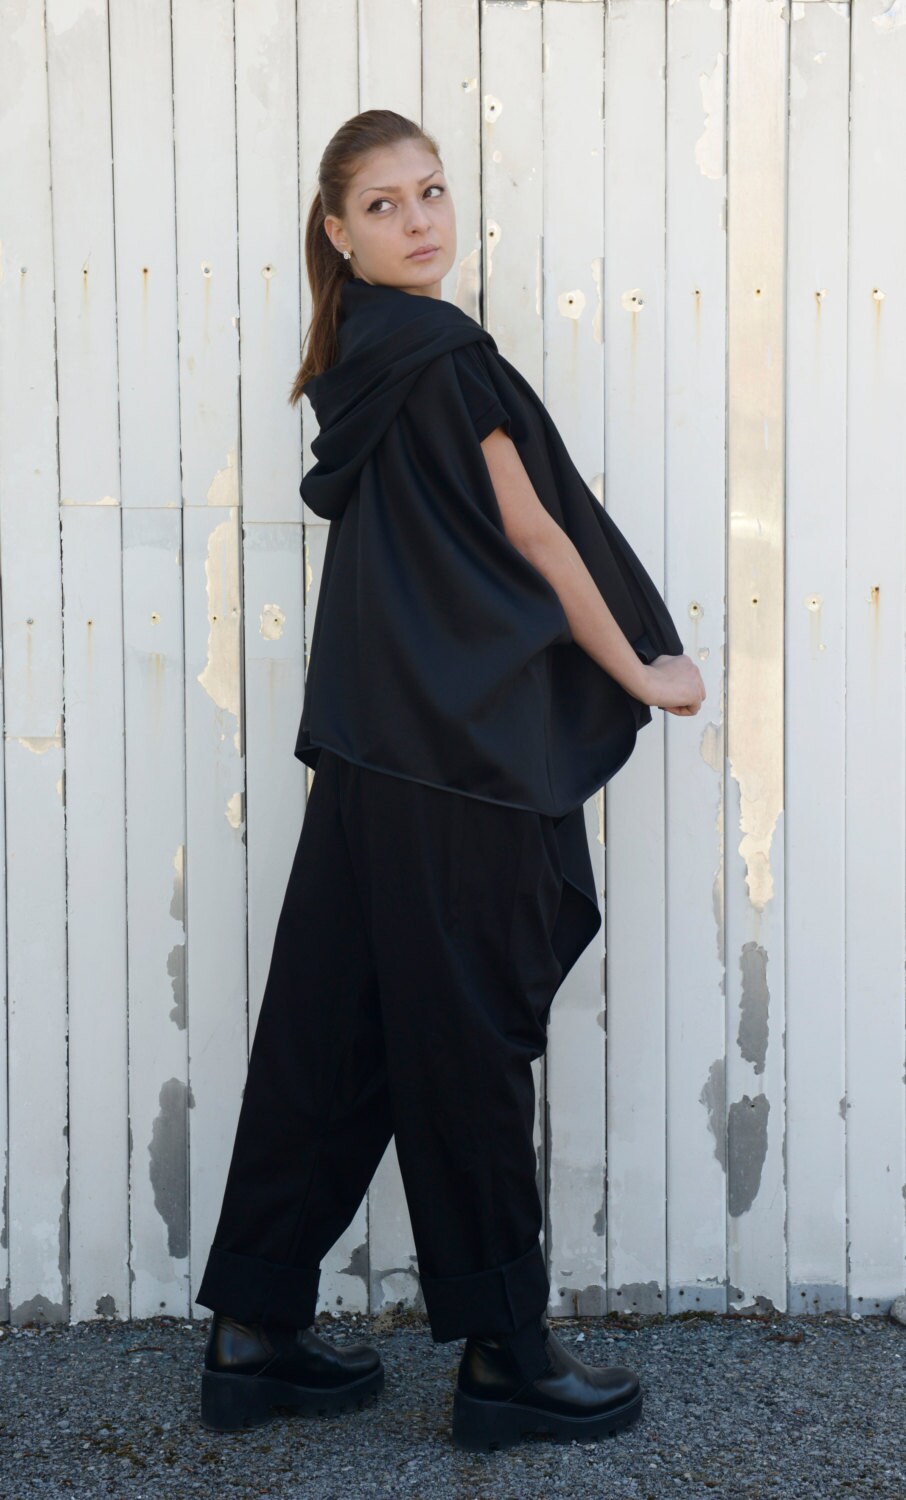 Black Asymmetric Vest / Sleeveless Casual Coat / Extravagant | Etsy